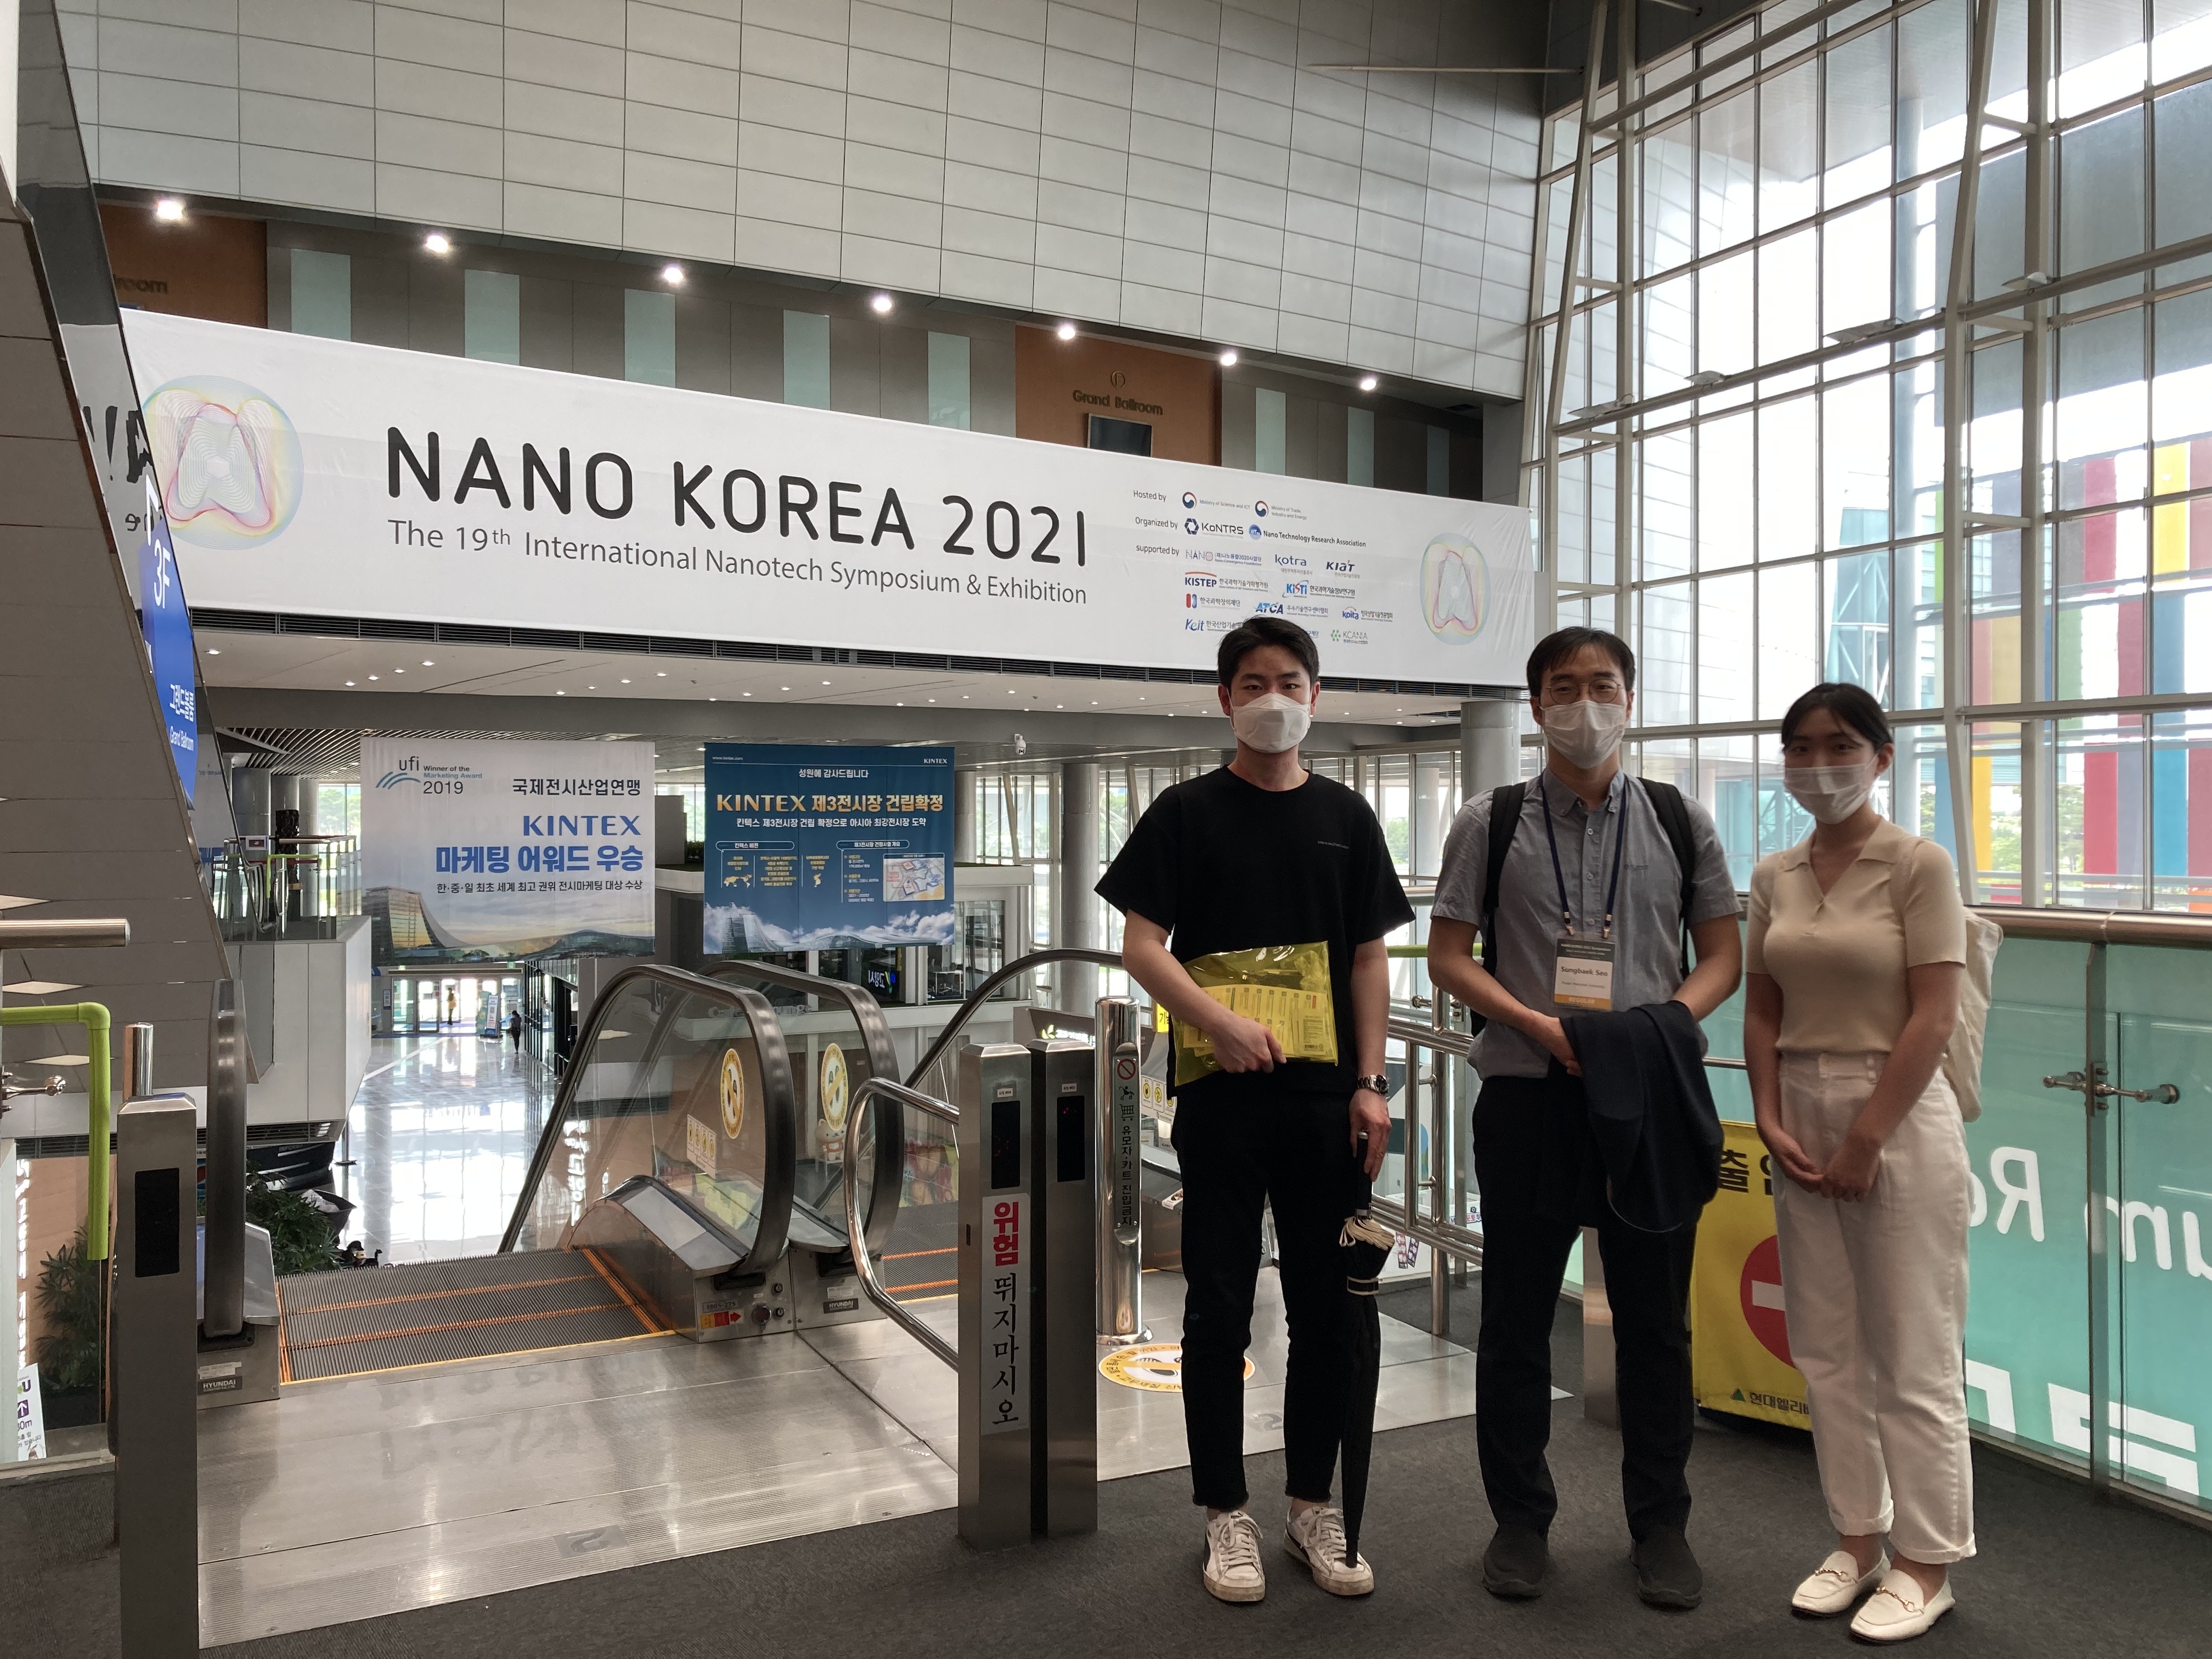 2021 Nano Korea@Kintex, Meeting@Yonsei U, ENVEX@Coex 나노코리아.jpg